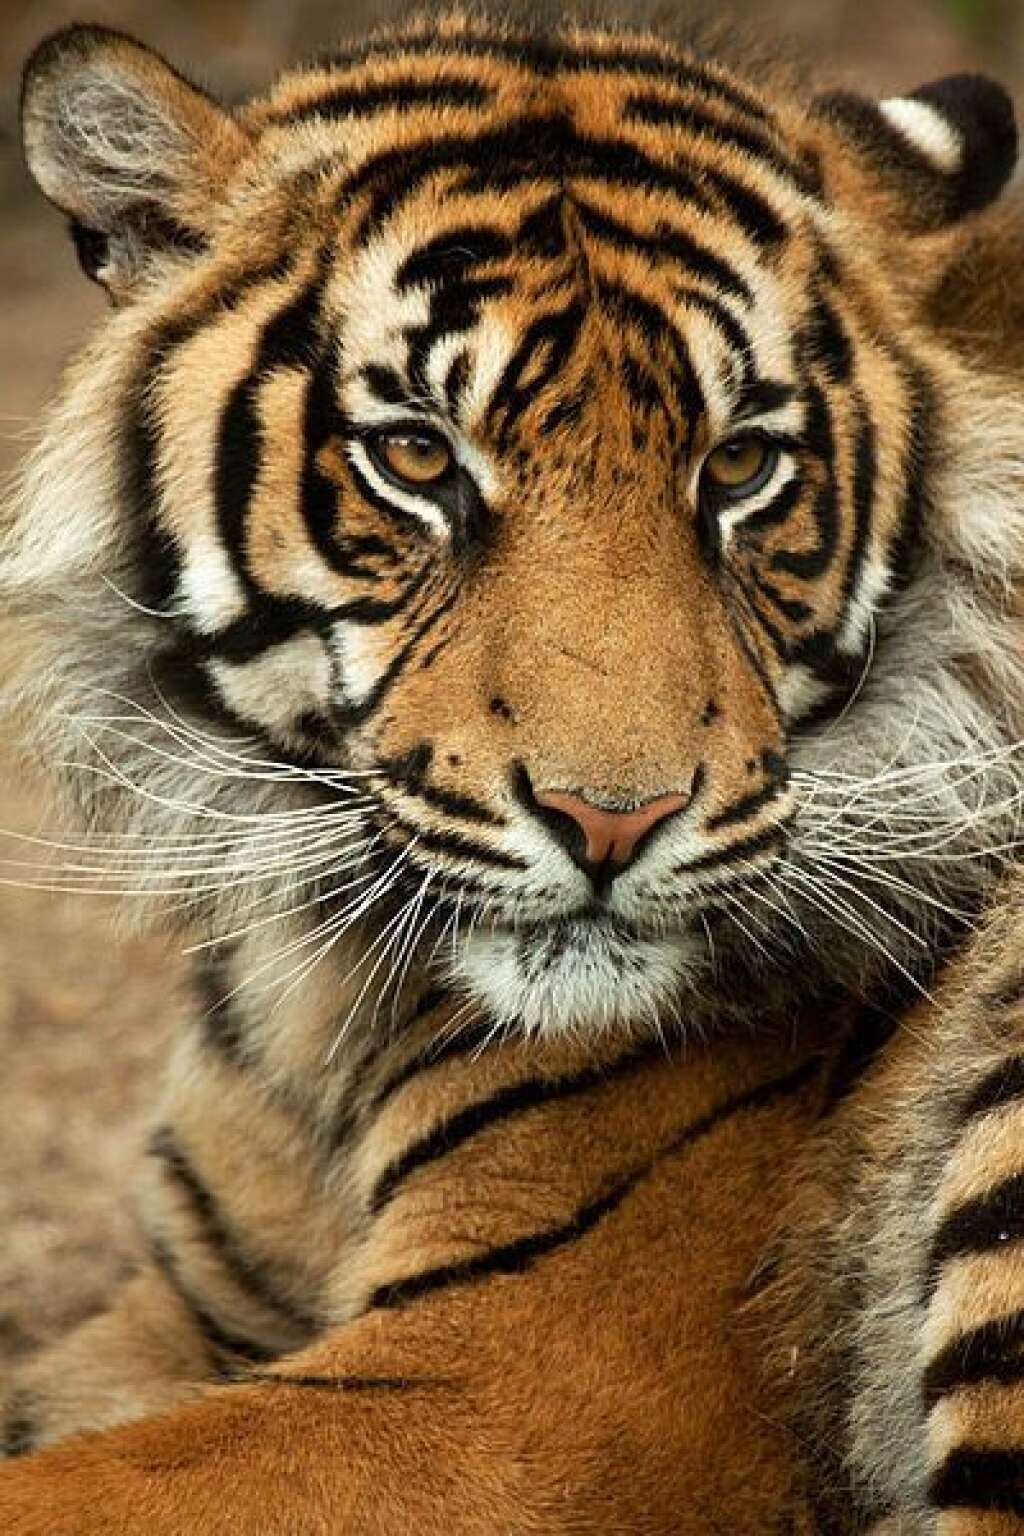 Le tigre de Sumatra - Le tigre de Sumatra est certainement le plus représentatif du danger d'extinction qui menace ces gros félins. Une population en déclin, un nombre d'individus très faible (moins de 700) : voilà un exemple concret de la fragilité des carnivores, qui sont les premiers témoins visibles de la dégradation des espace naturels.